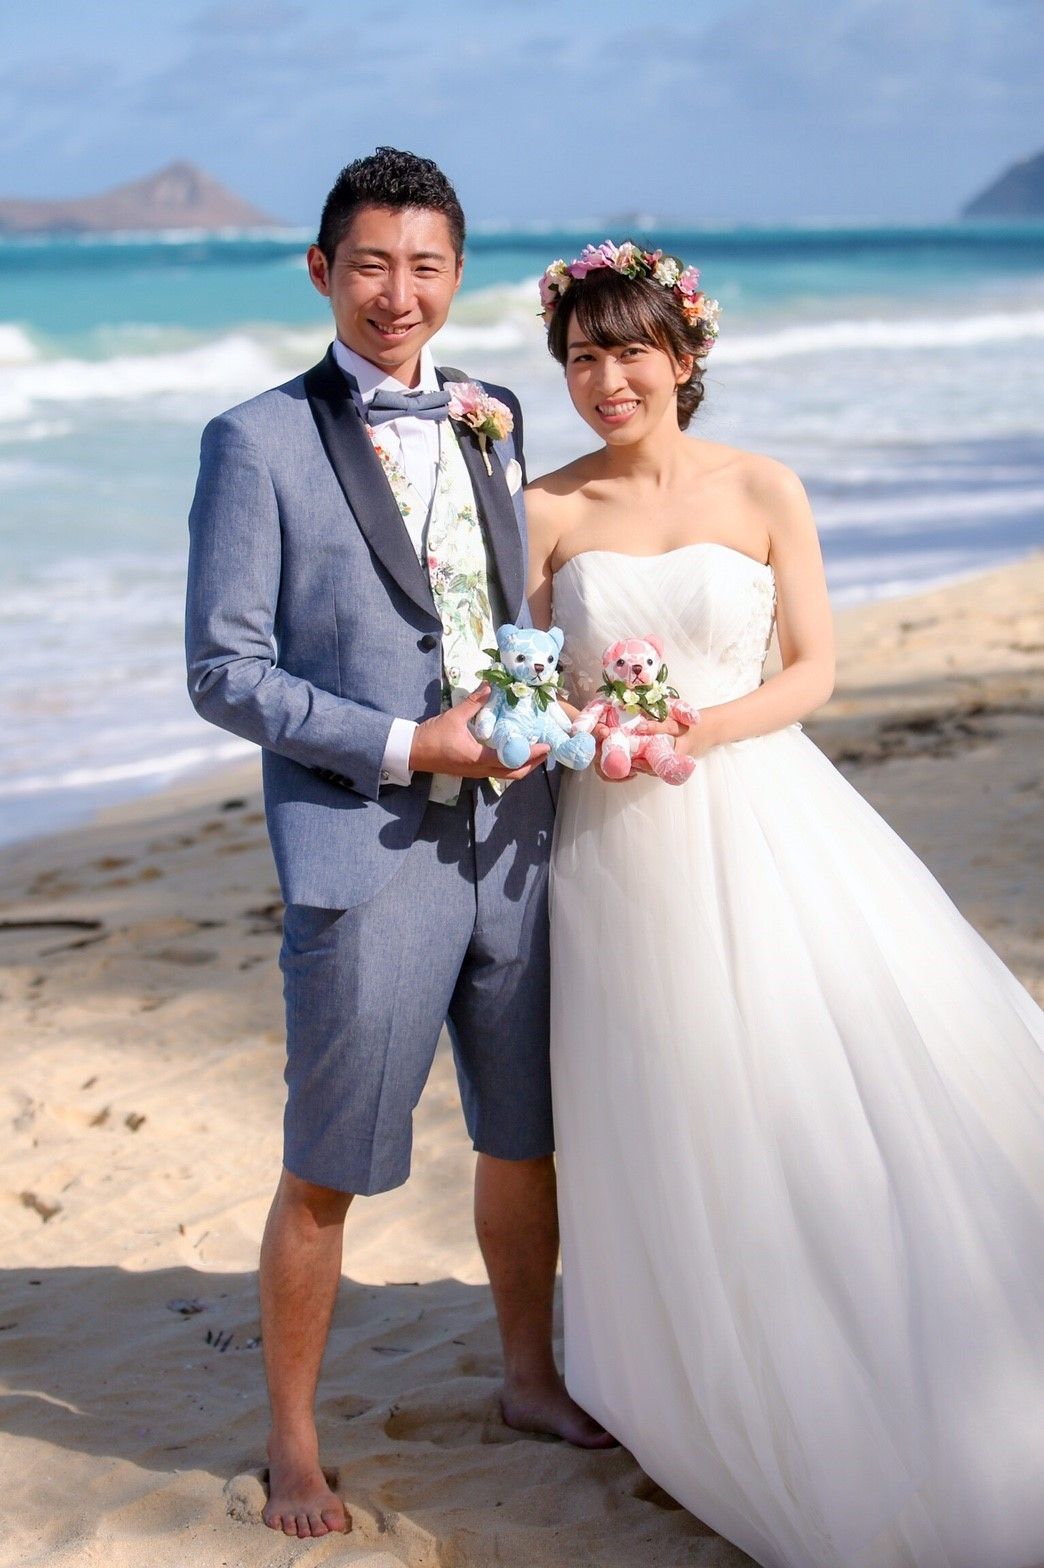 ハワイ挙式に合うウェディングドレスは スタイル別の選び方と持ち込み レンタルの方法 結婚式準備はウェディングニュース